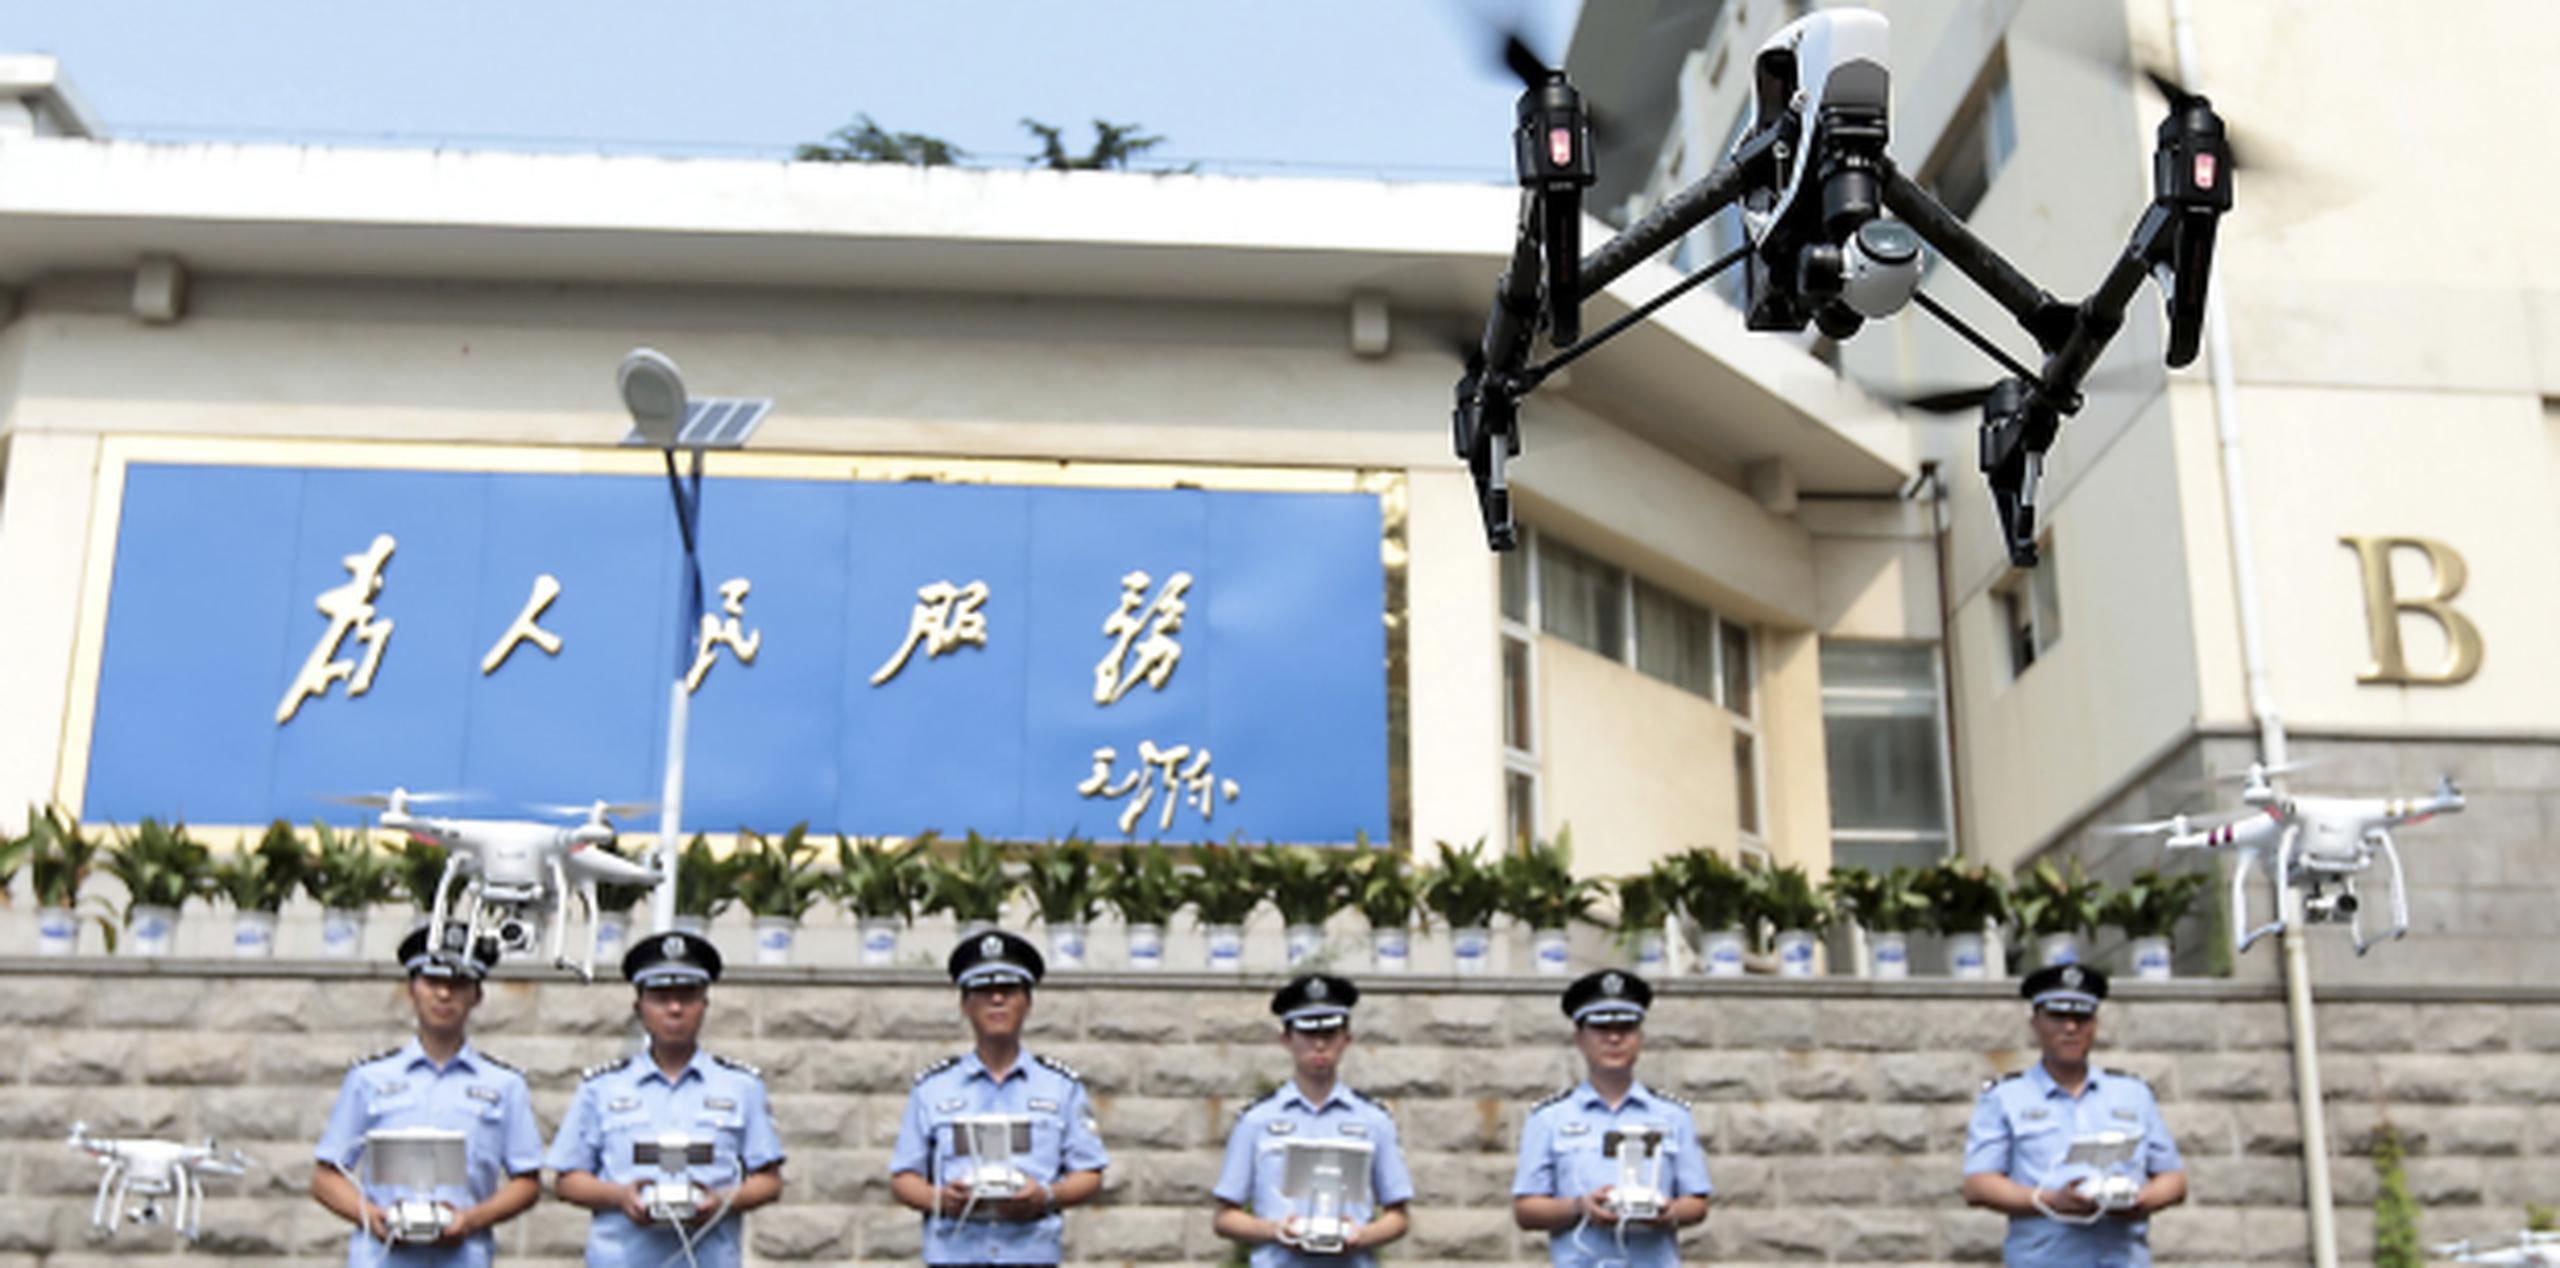 El Ministerio de Comercio y las Aduanas no especificaron las razones por las que estos aparatos pueden afectar a la seguridad nacional china. (AP)